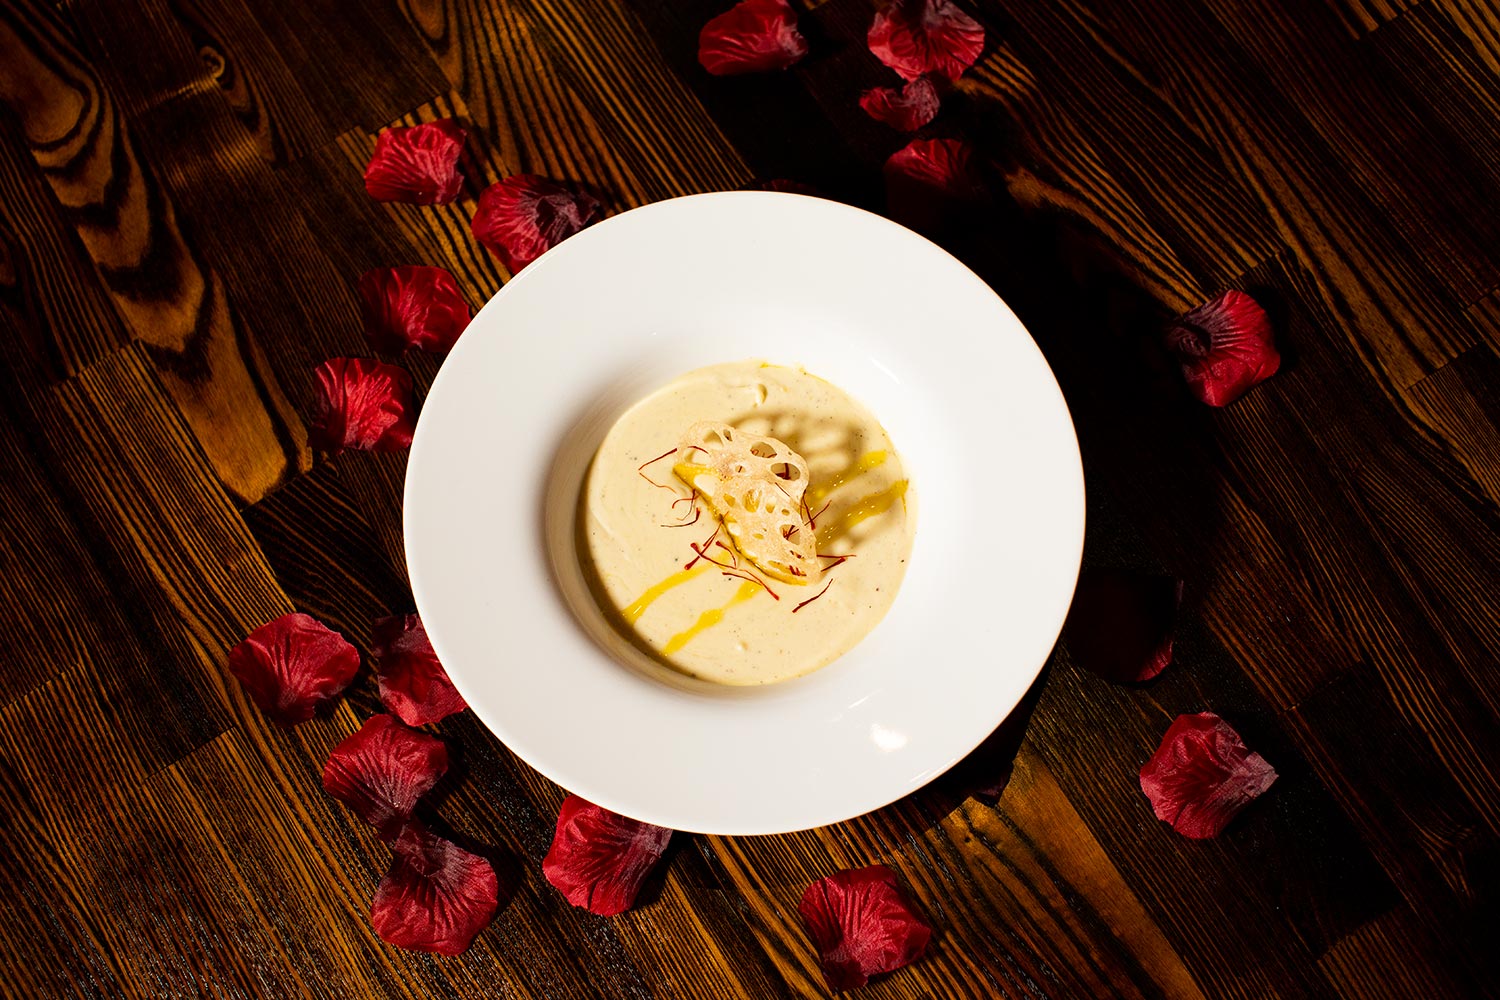 Potato Soup with Caramelized Leek & Saffron | Valentine's Menu Items | Saffron The Eatery